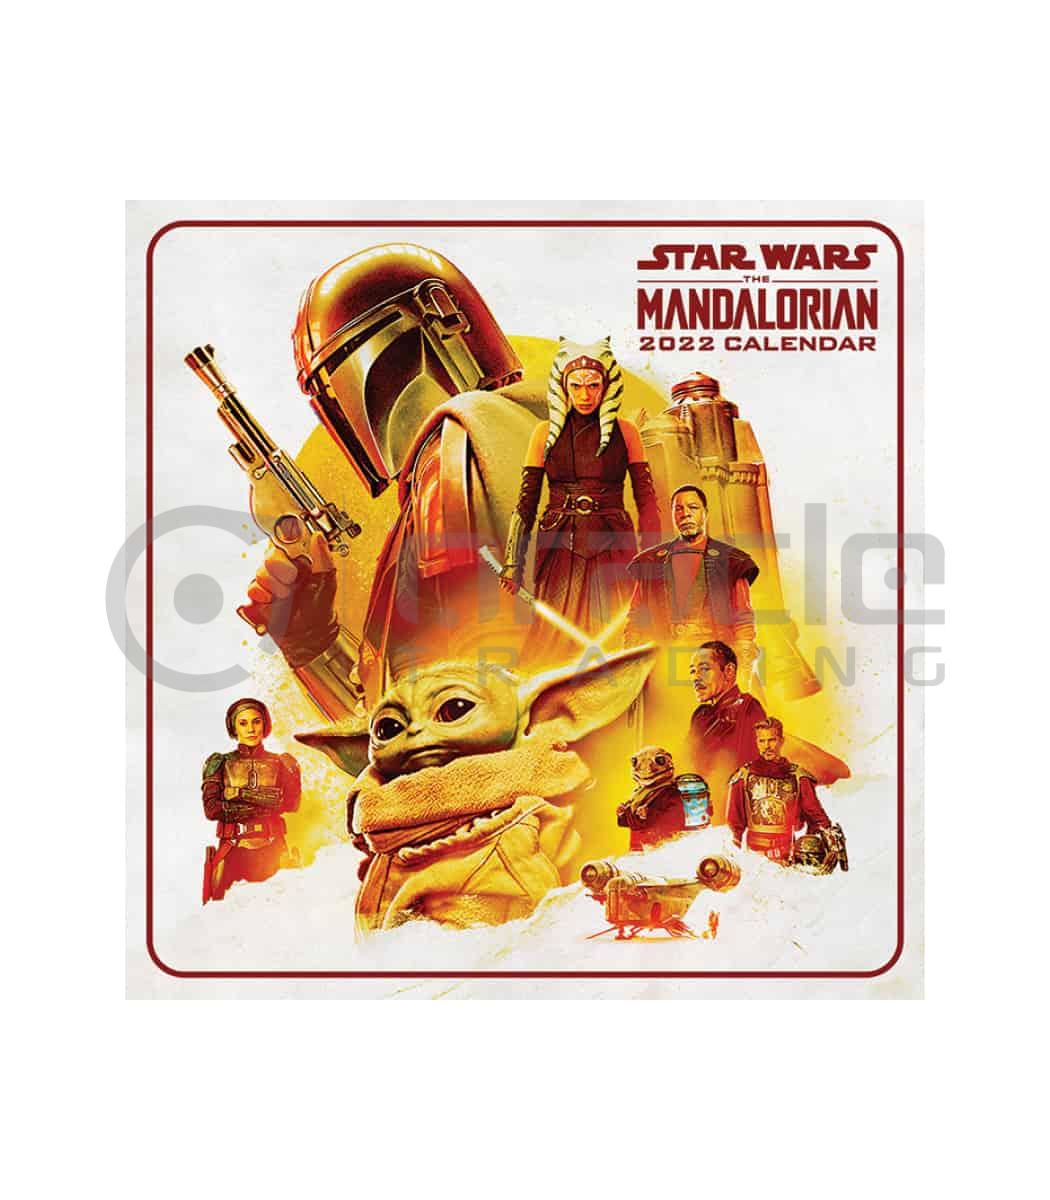 Star Wars: The Mandalorian Season 3 2023 Calendar